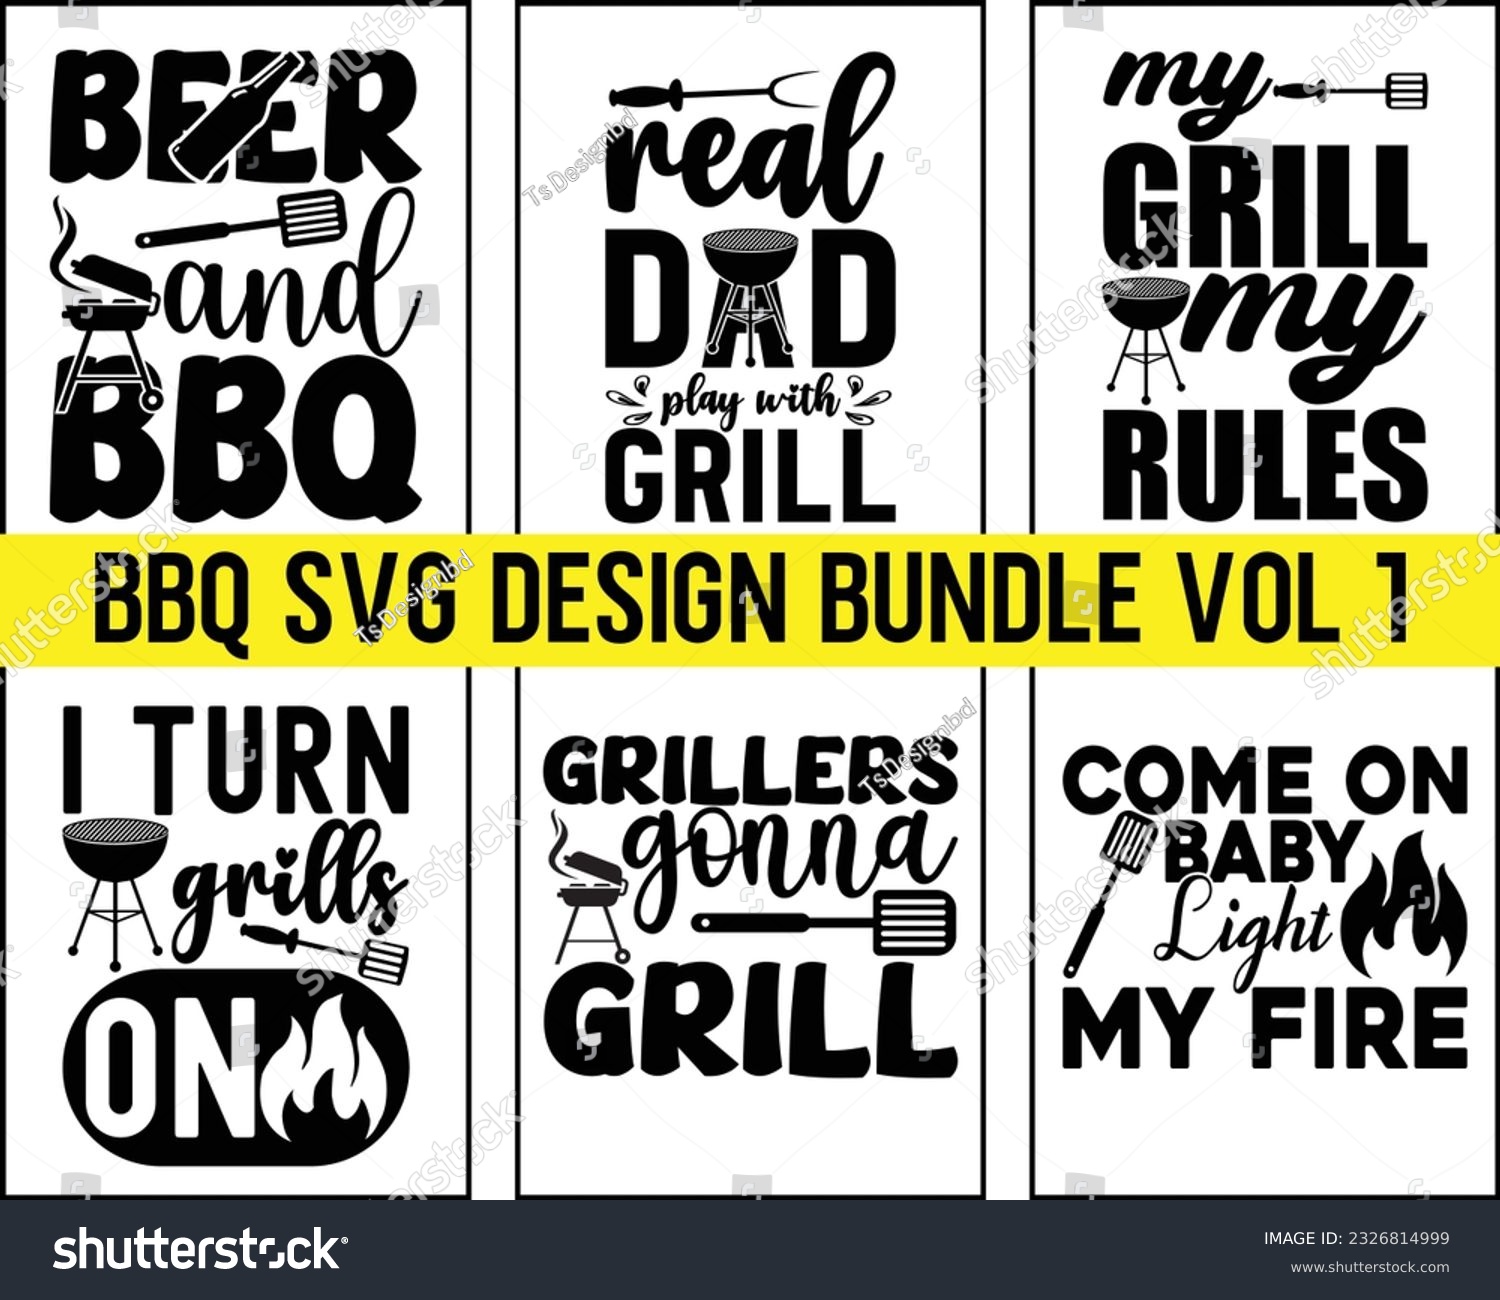 SVG of Barbecue svg Design Bundle Vol 1,Bbq Svg Bundle,BBQ SVG design and craft files, Barbeque party,Funny BBQ,bar-b-q,kitchen, master,food,beer,Bbq eps File,Svg Bundle svg